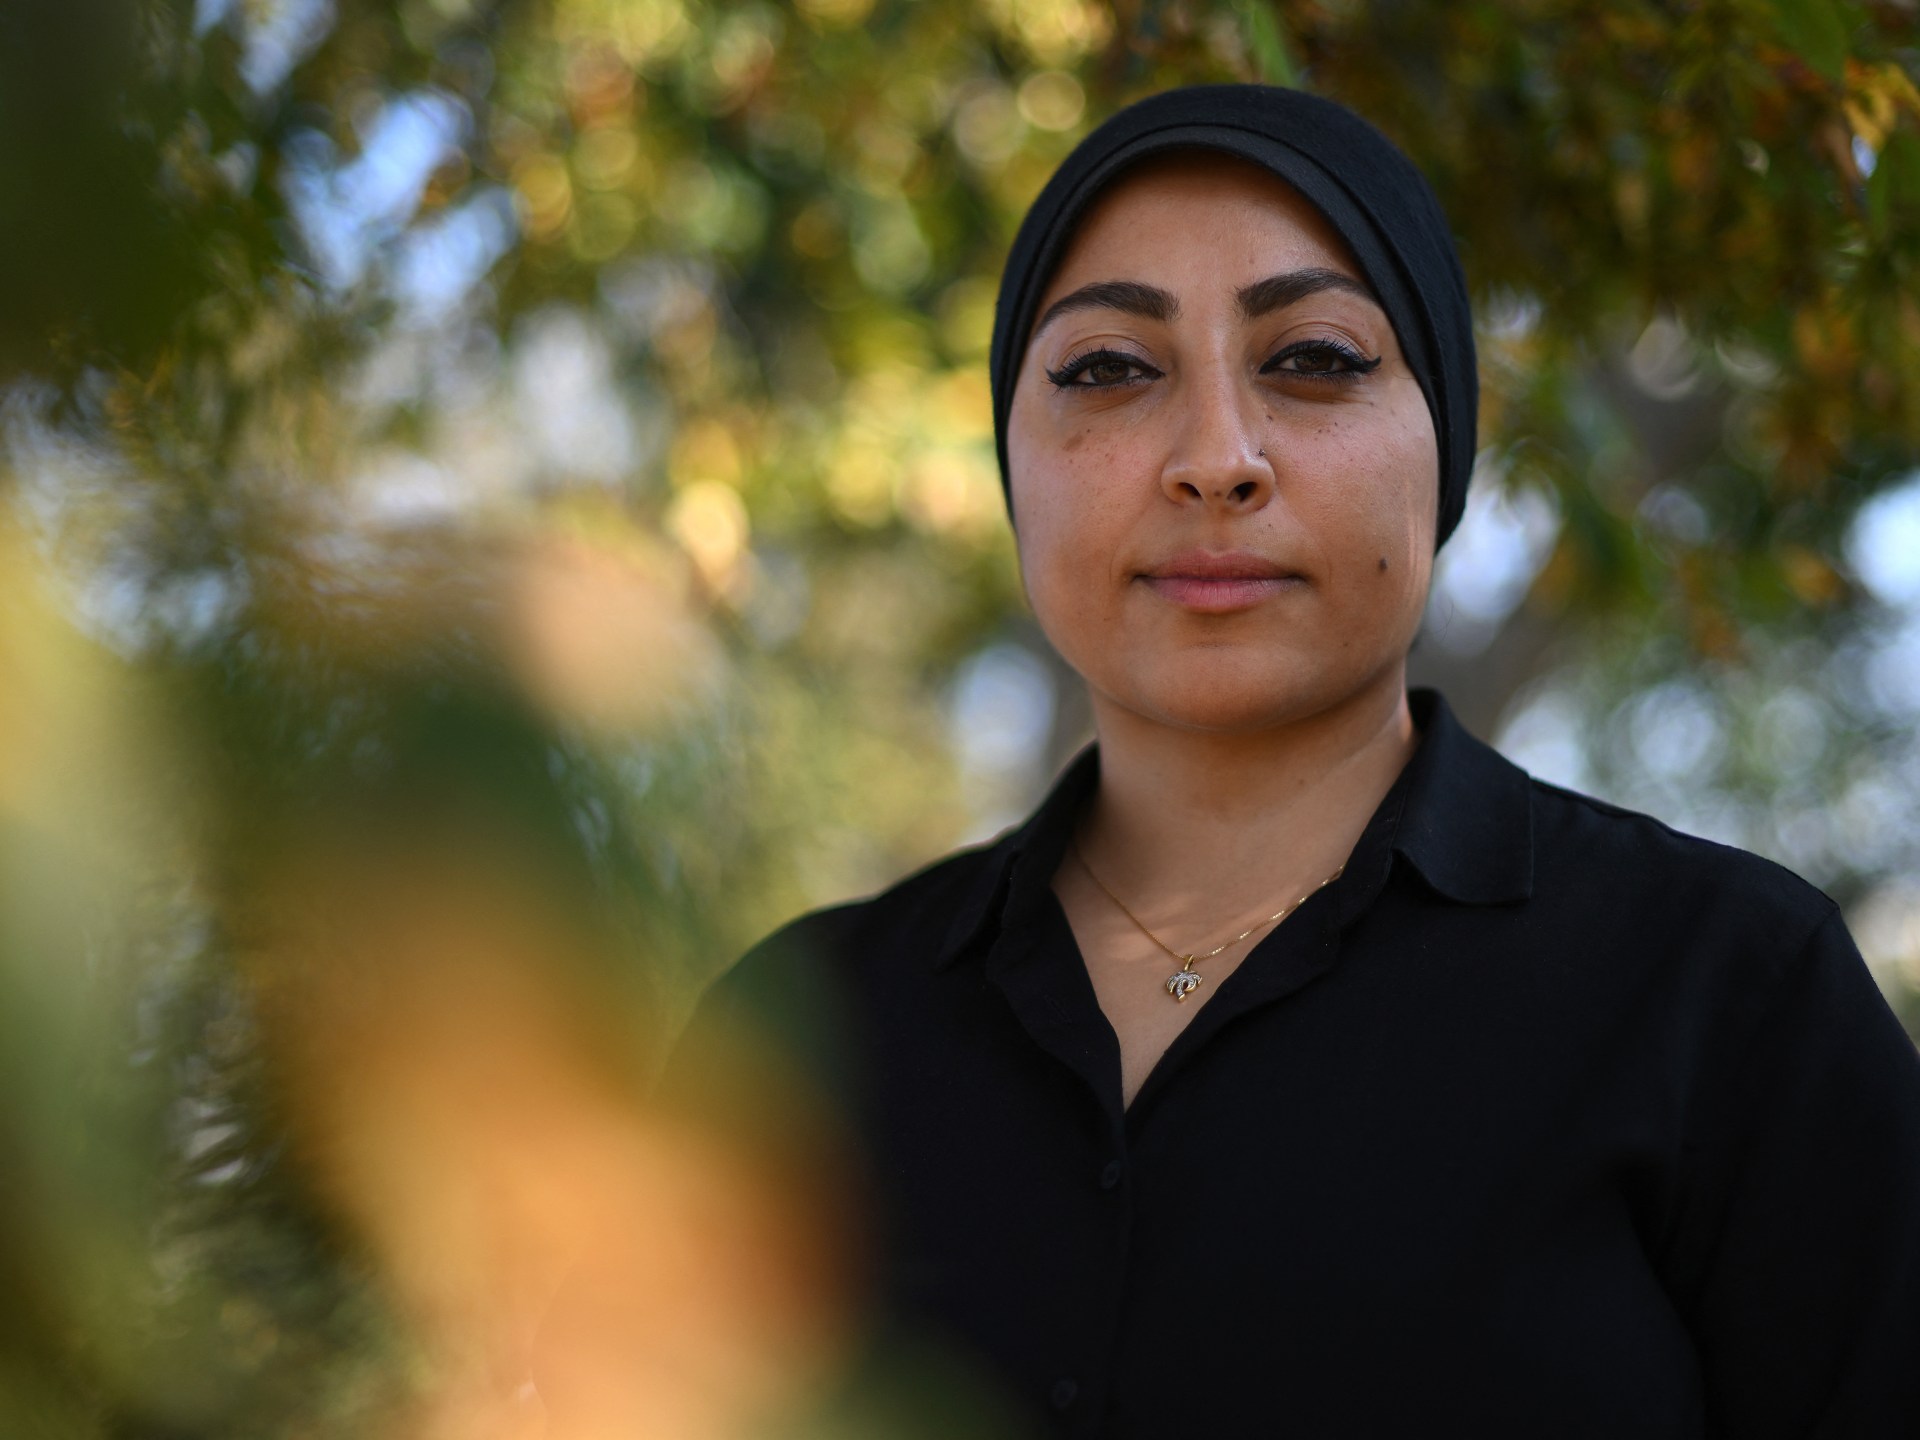 Bahreynli aktivist Maryam al-Khawaja’nın İngiltere’den Manama uçağına binmiş olduğu reddedildi